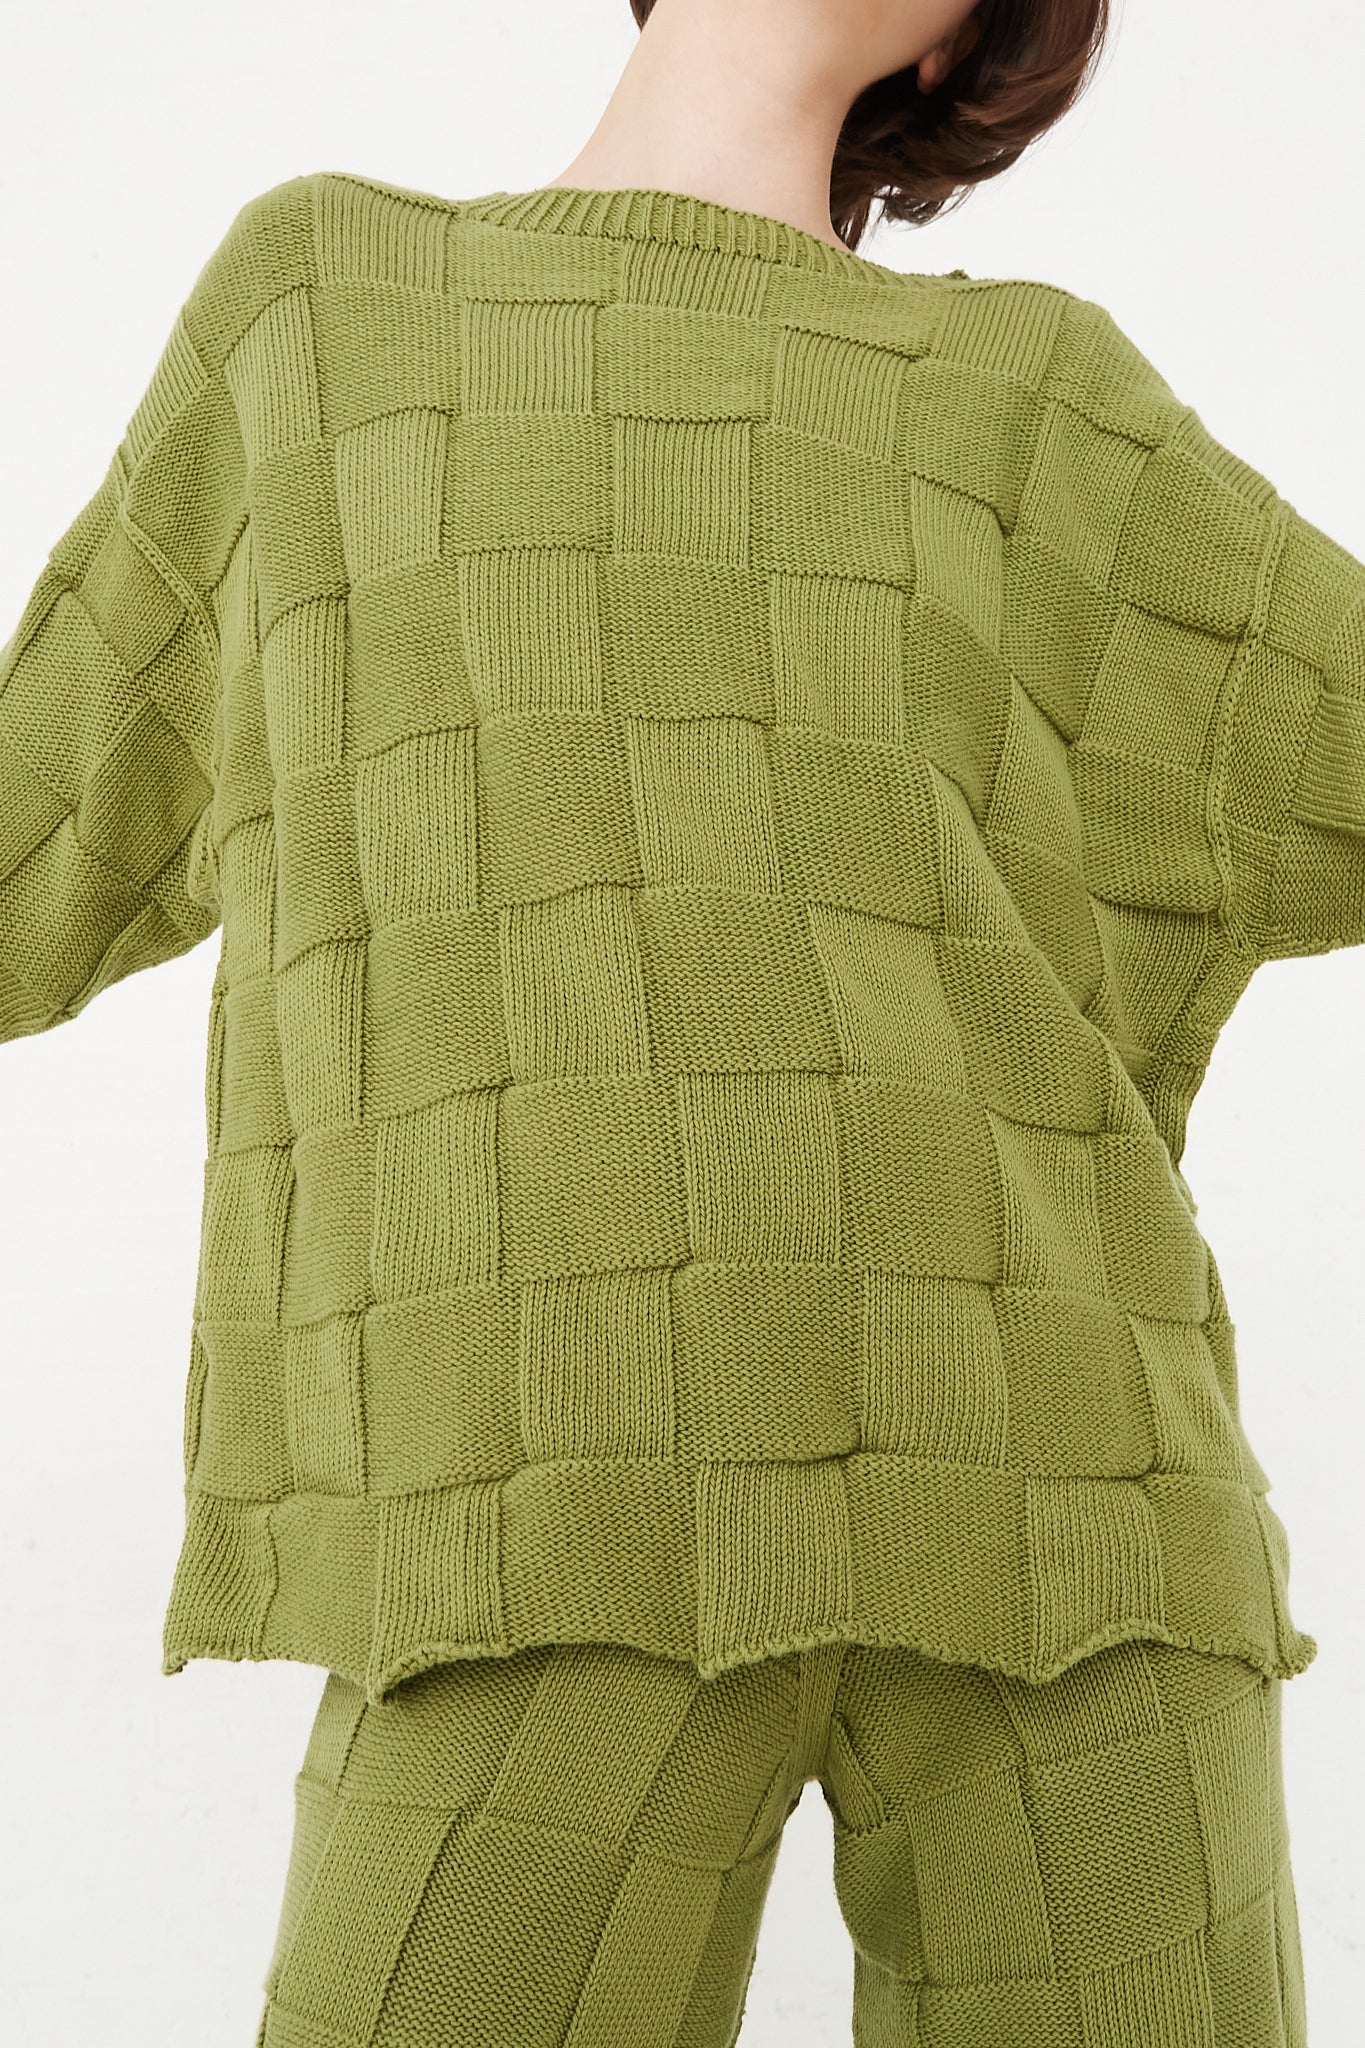 Baserange - Konak Sweater in Zek Green front detail